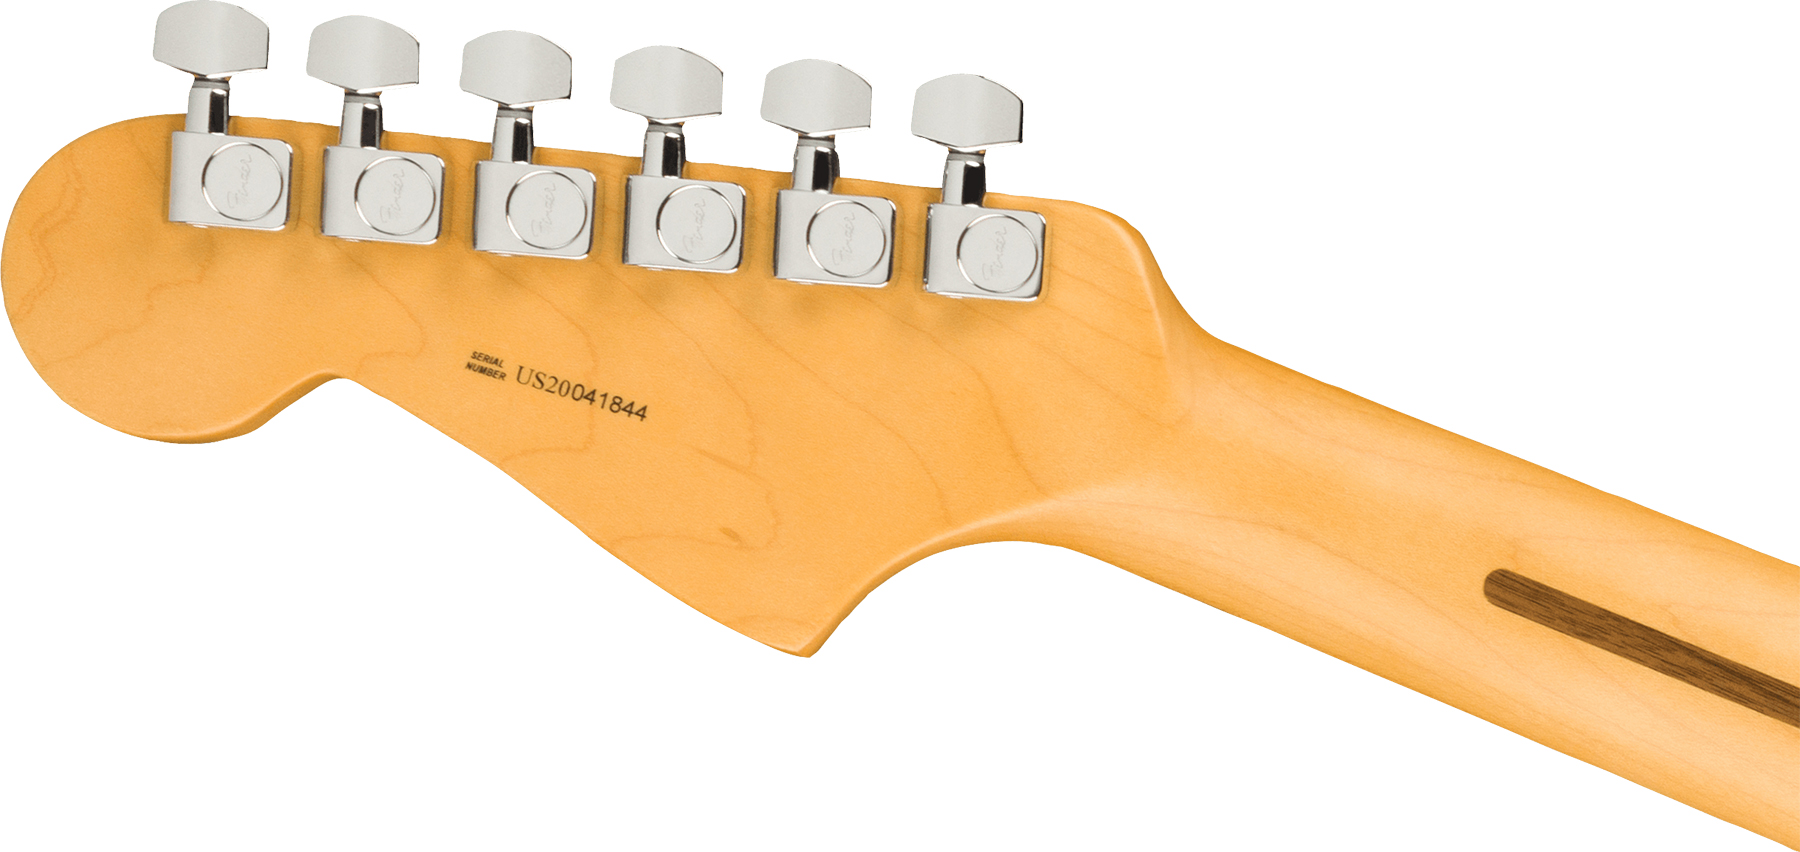 Fender Jazzmaster American Professional Ii Lh Gaucher Usa Rw - 3-color Sunburst - Guitarra electrica para zurdos - Variation 3